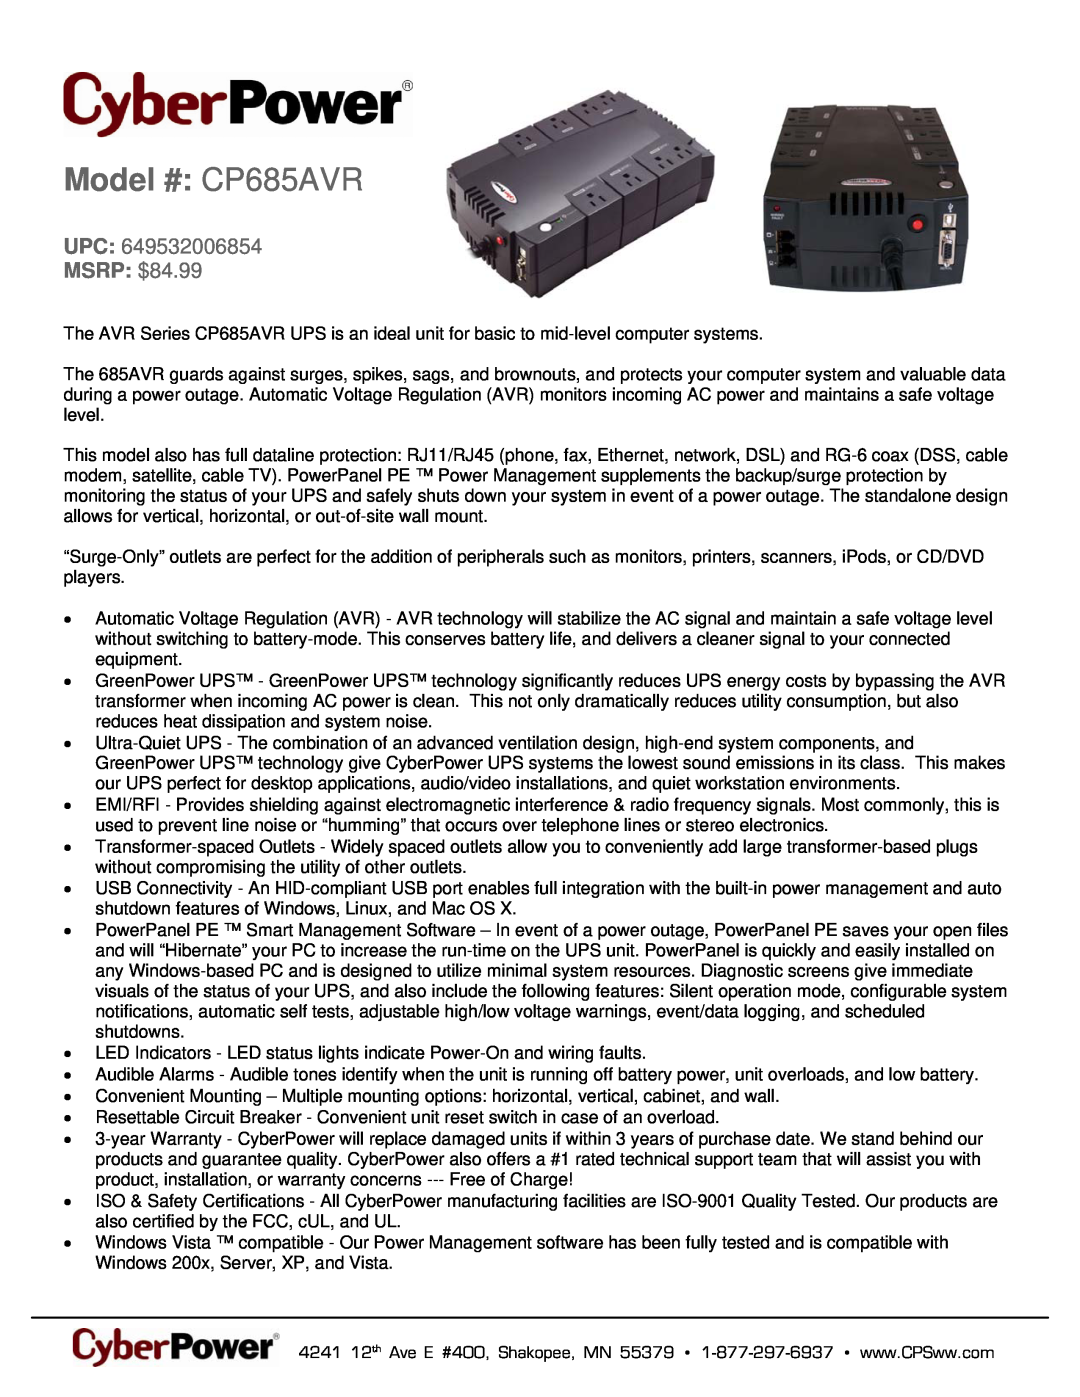 CyberPower Systems 649532006854 warranty Model # CP685AVR, MSRP $84.99 